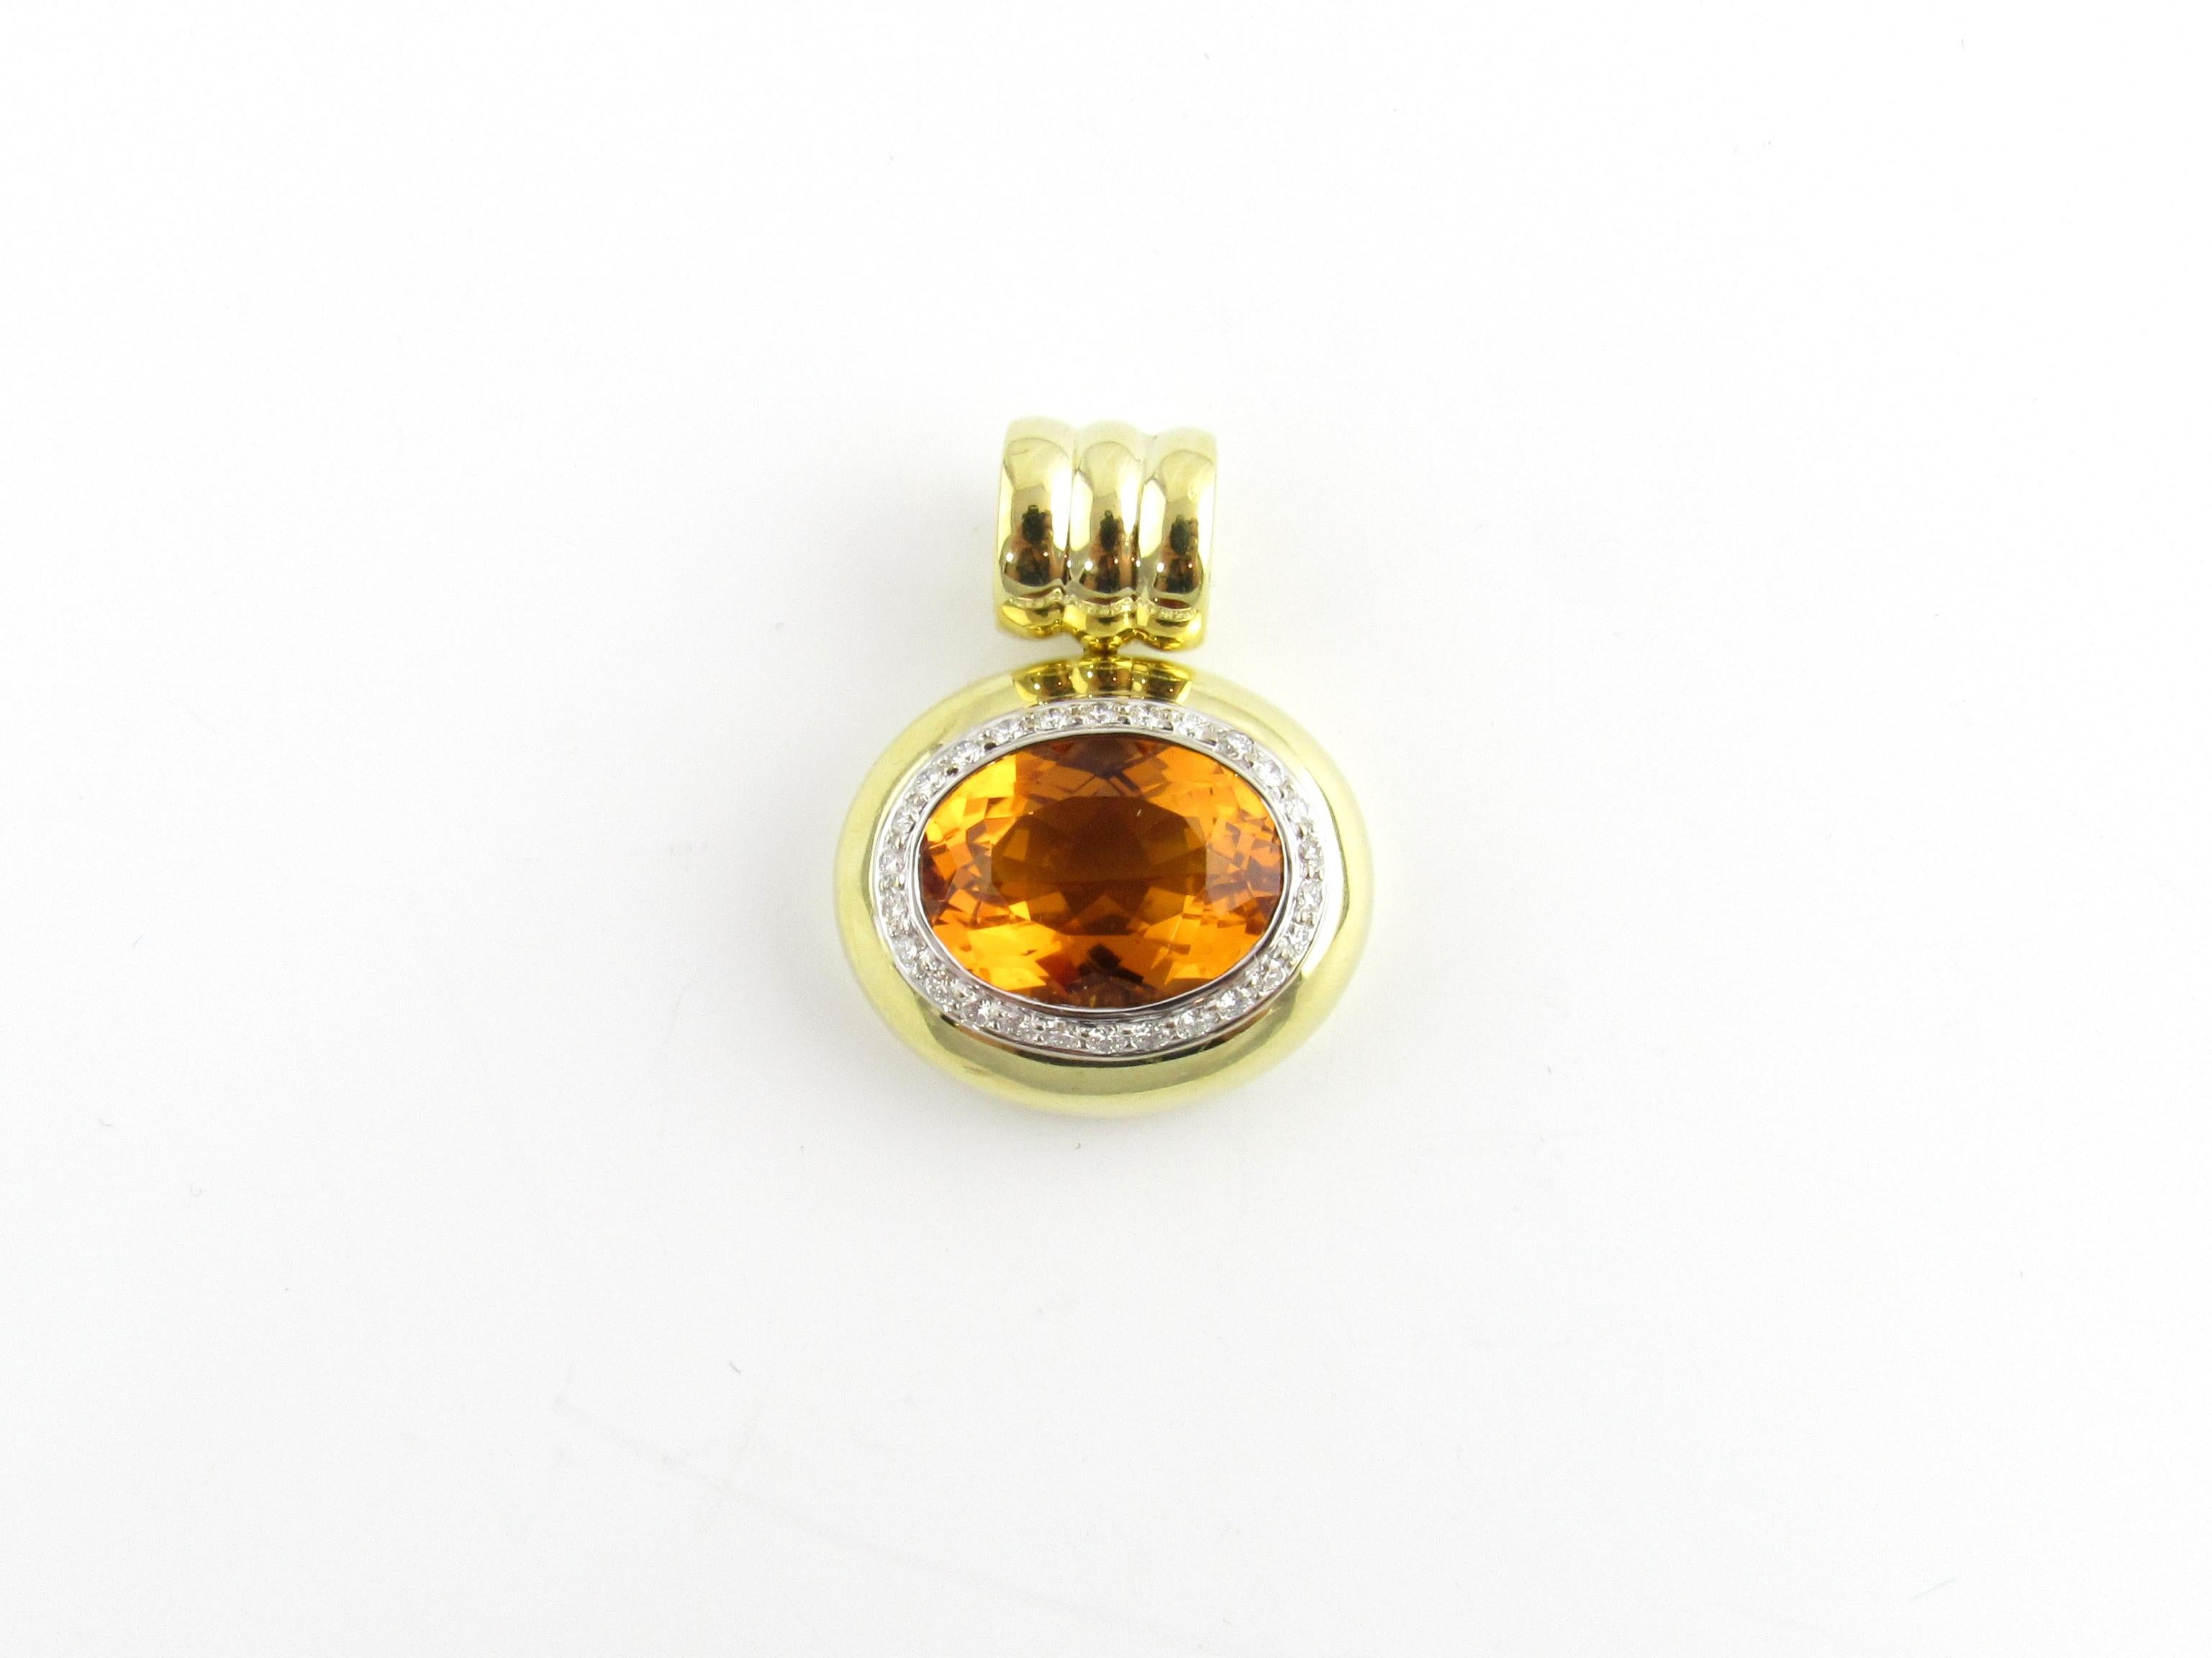 Pendentif vintage en or jaune 18 carats avec citrine et diamant-

Ce charmant pendentif présente une citrine ovale de 10,54cts (17,16 mm x 12,82 mm x 8,58 mm) entourée de 27 diamants ronds de taille brillant et sertie dans de l'or jaune 18K